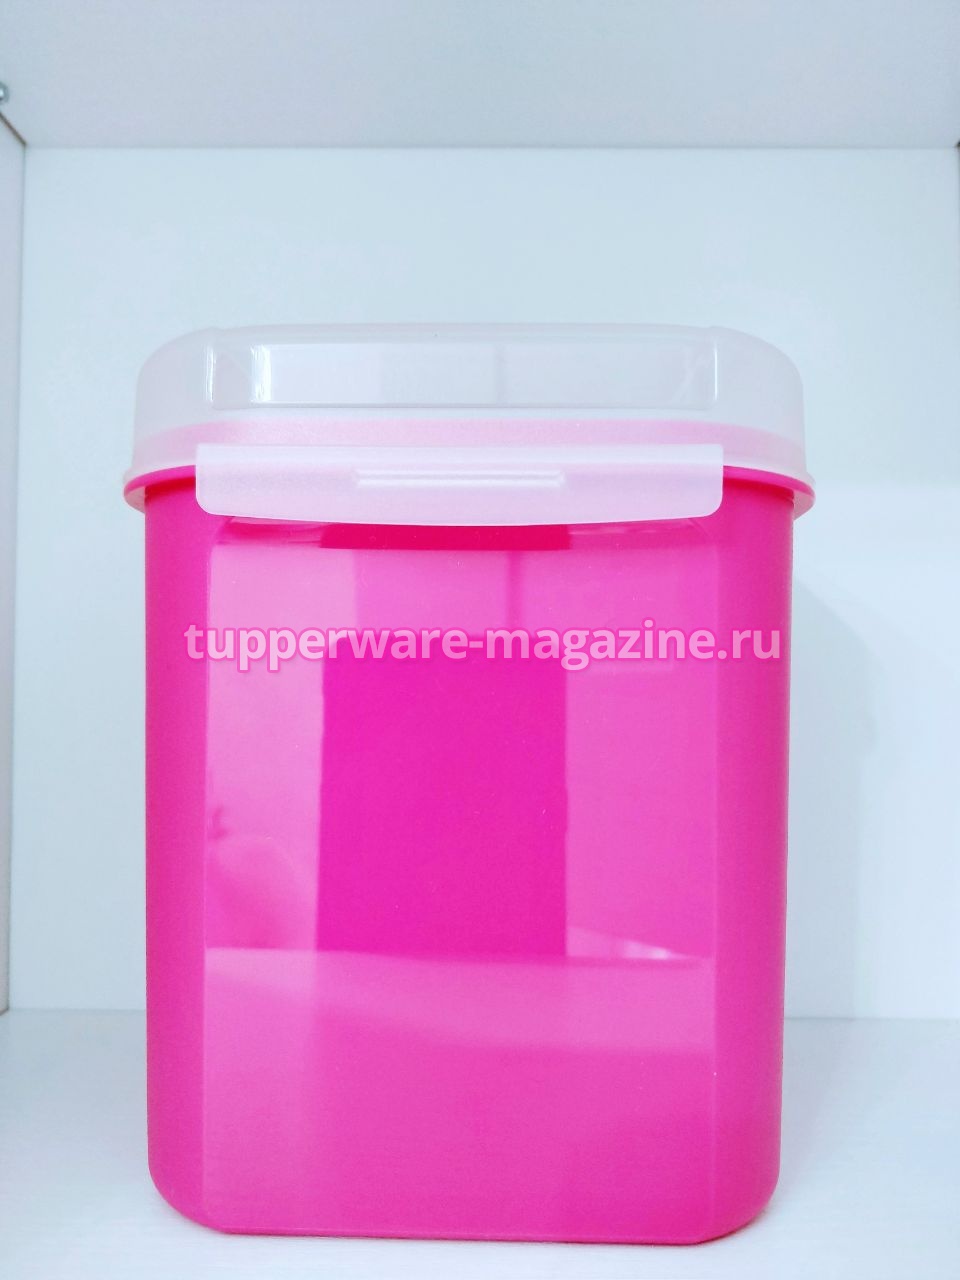 Кристальная емкость 1,2 л в розовом цвете